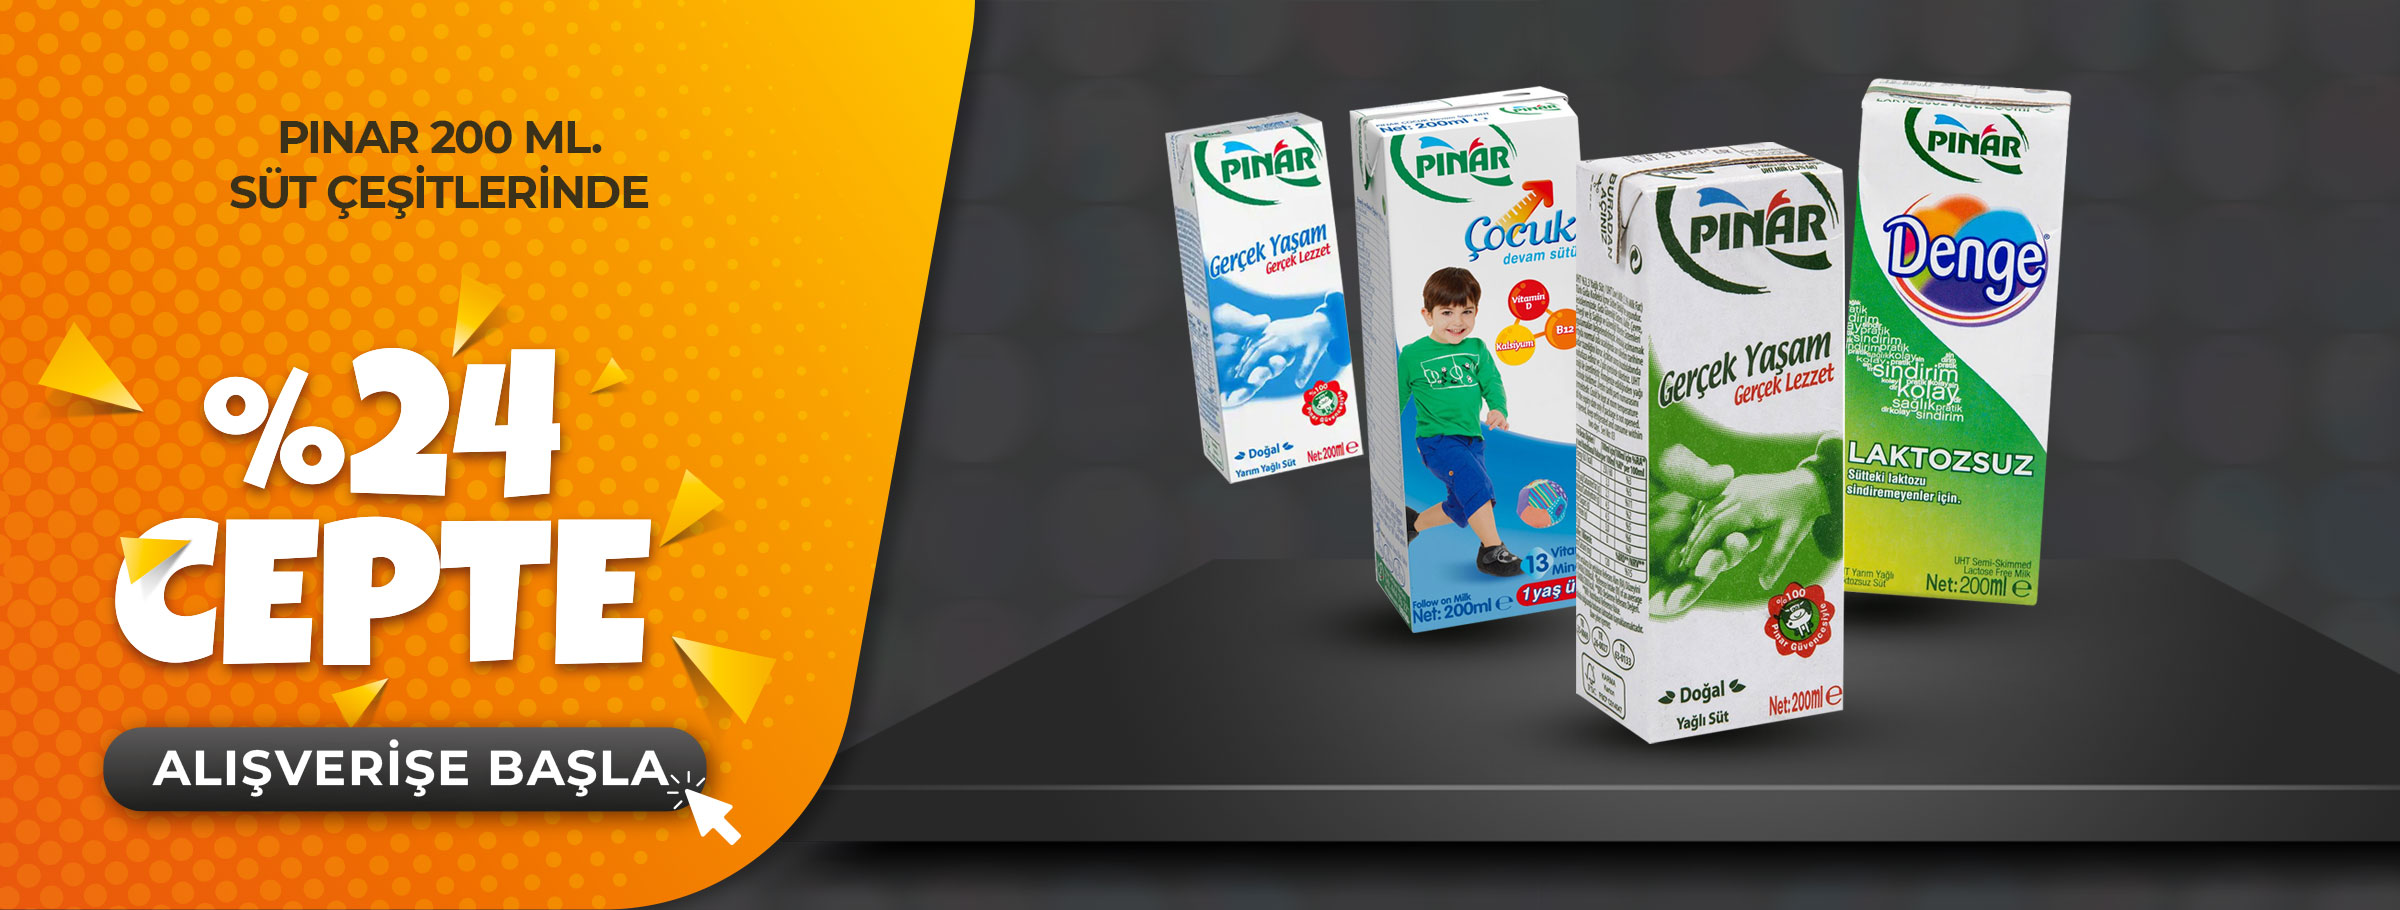 Pınar Marka 200 ML Süt Çeşitlerinde %24 Cepte!